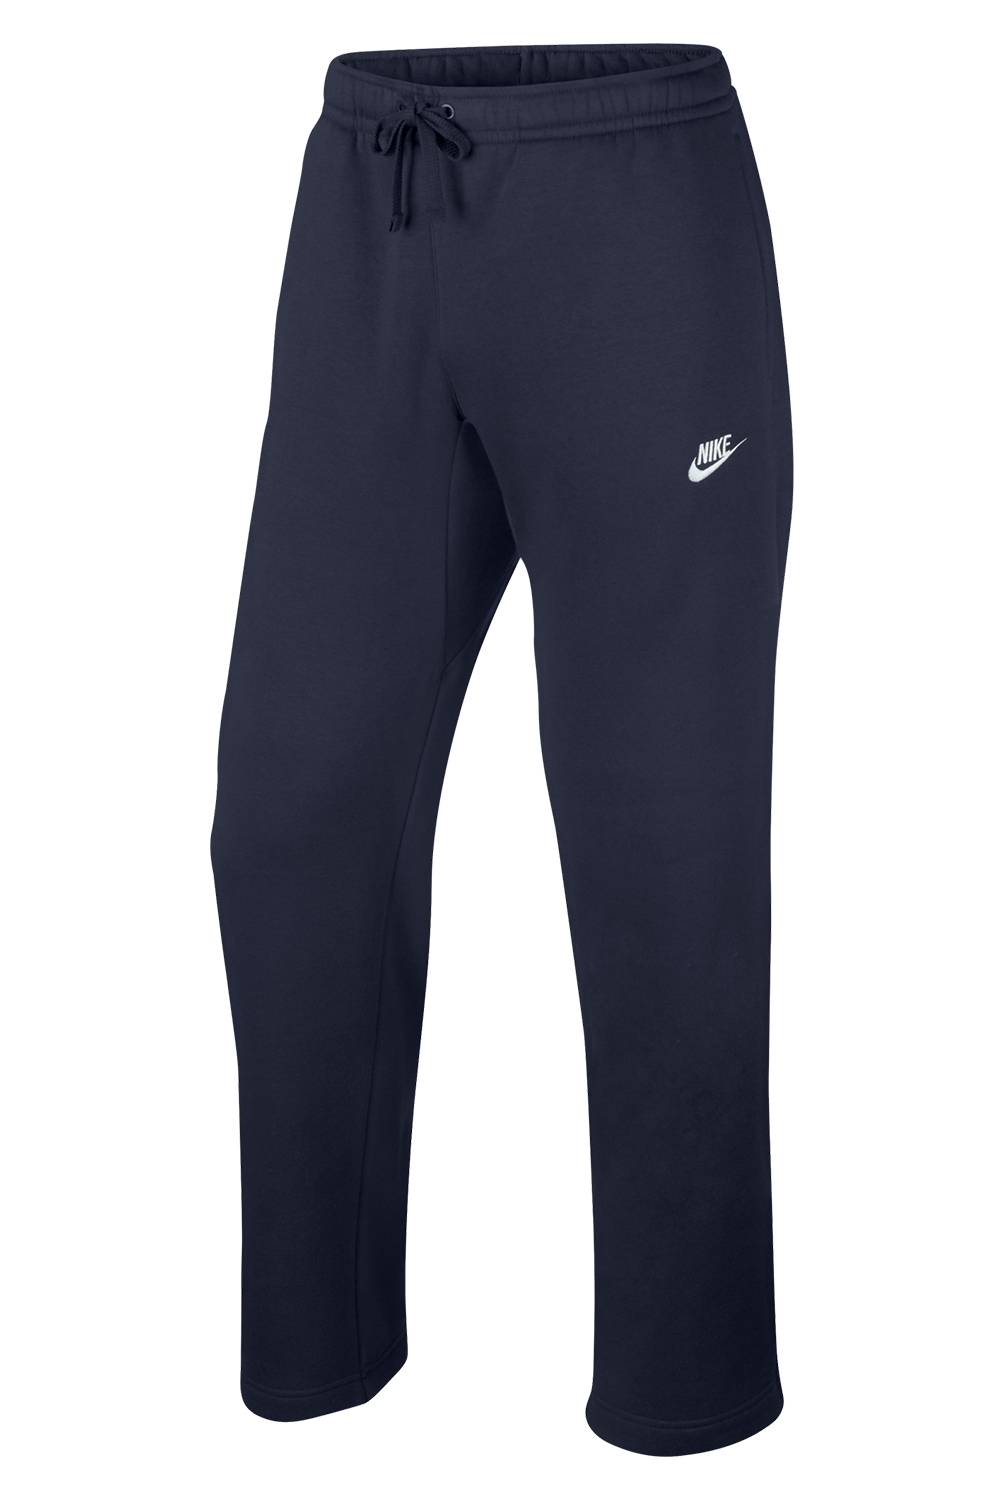 Nike - Pantalón Hombre